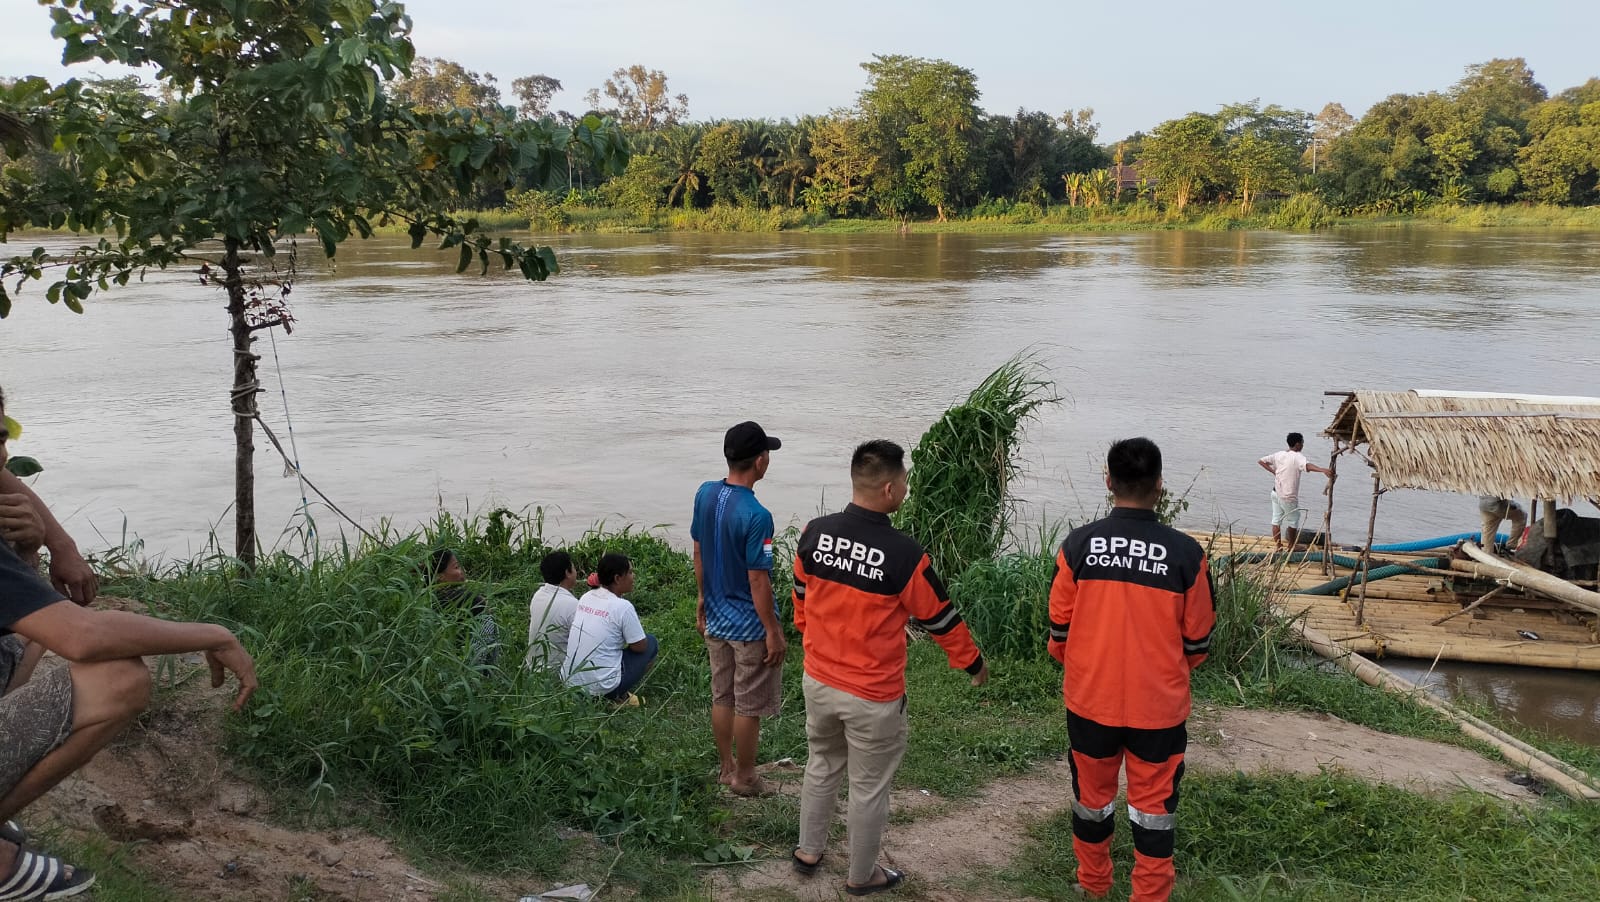 Polisi Gerebek Lapak Judi di Ogan Ilir, Oknum Anggota DPRD Terjaring, 1 Orang Hilang di Sungai